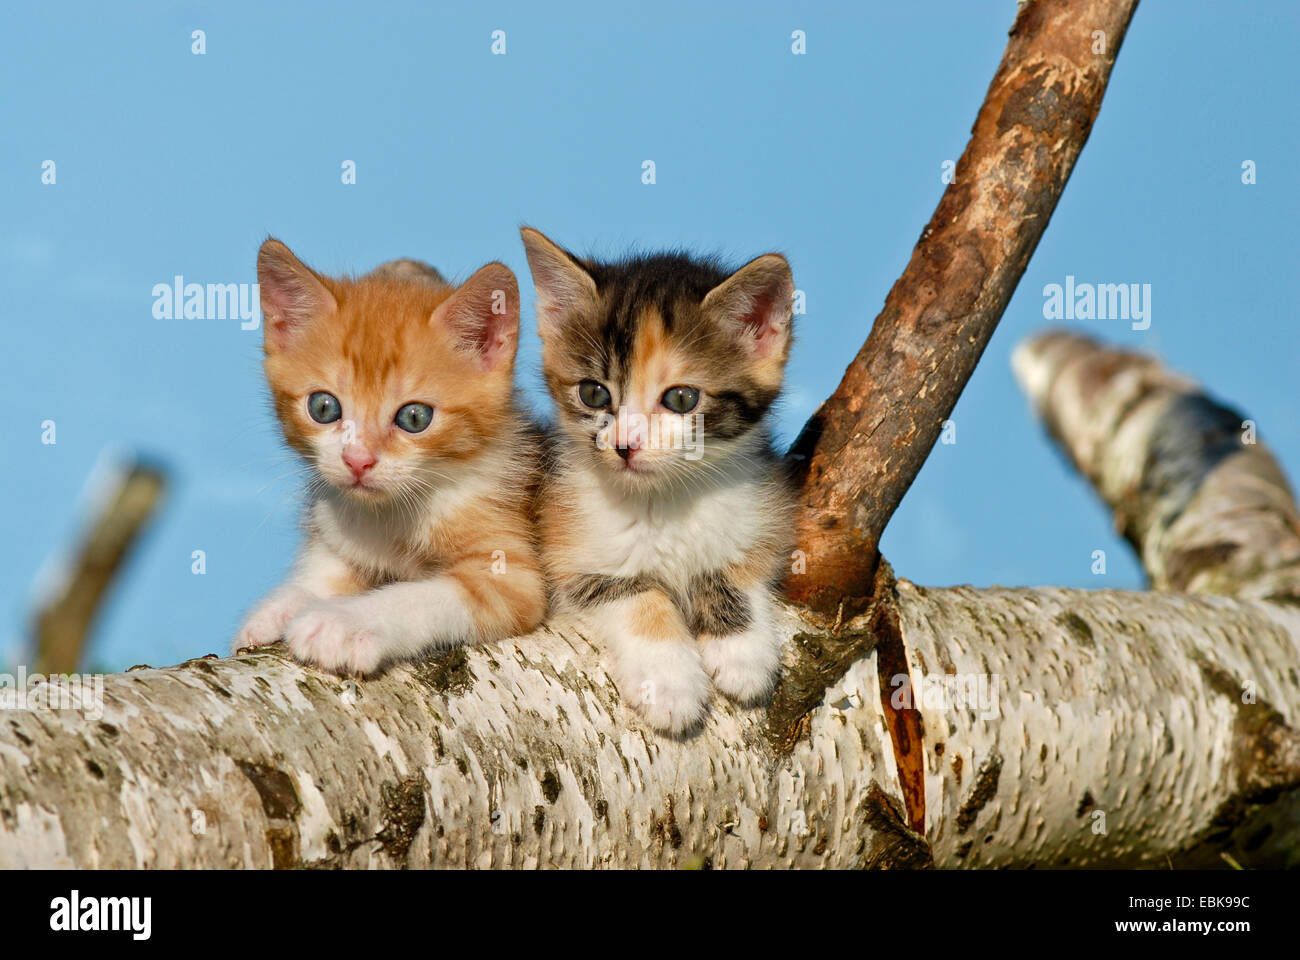 Chat domestique, le chat domestique (Felis silvestris catus), f. deux chatons assis sur une branche de bouleau, Allemagne Banque D'Images